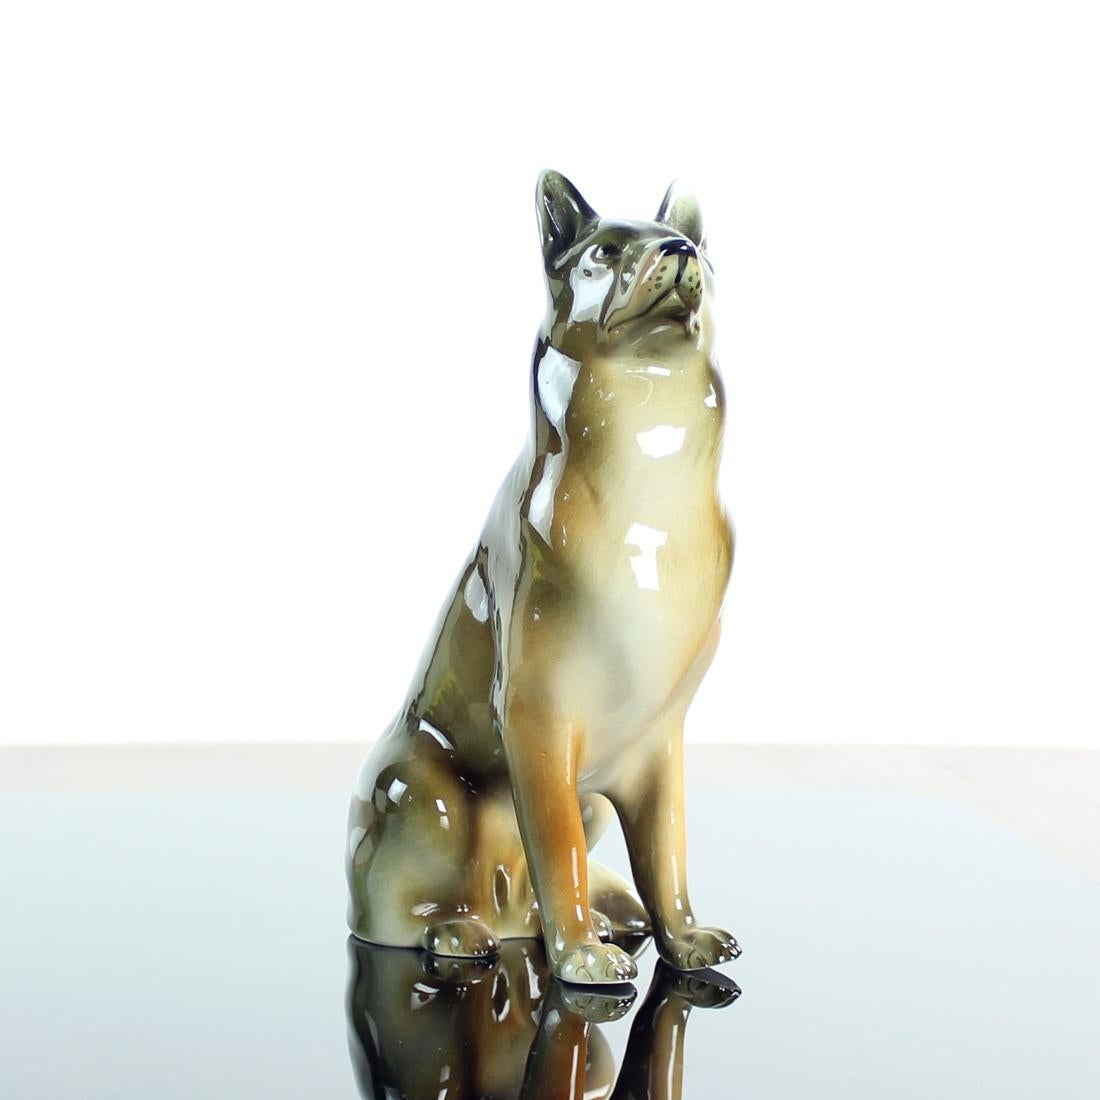 Schönes Stück einer Hundestatue, die einen Deutschen Schäferhund darstellt. Die Statue wurde in den 1960er Jahren von der Firma Royal Dux in der Tschechoslowakei hergestellt, einem der führenden Porzellanfigurenhersteller jener Zeit. Der Deutsche